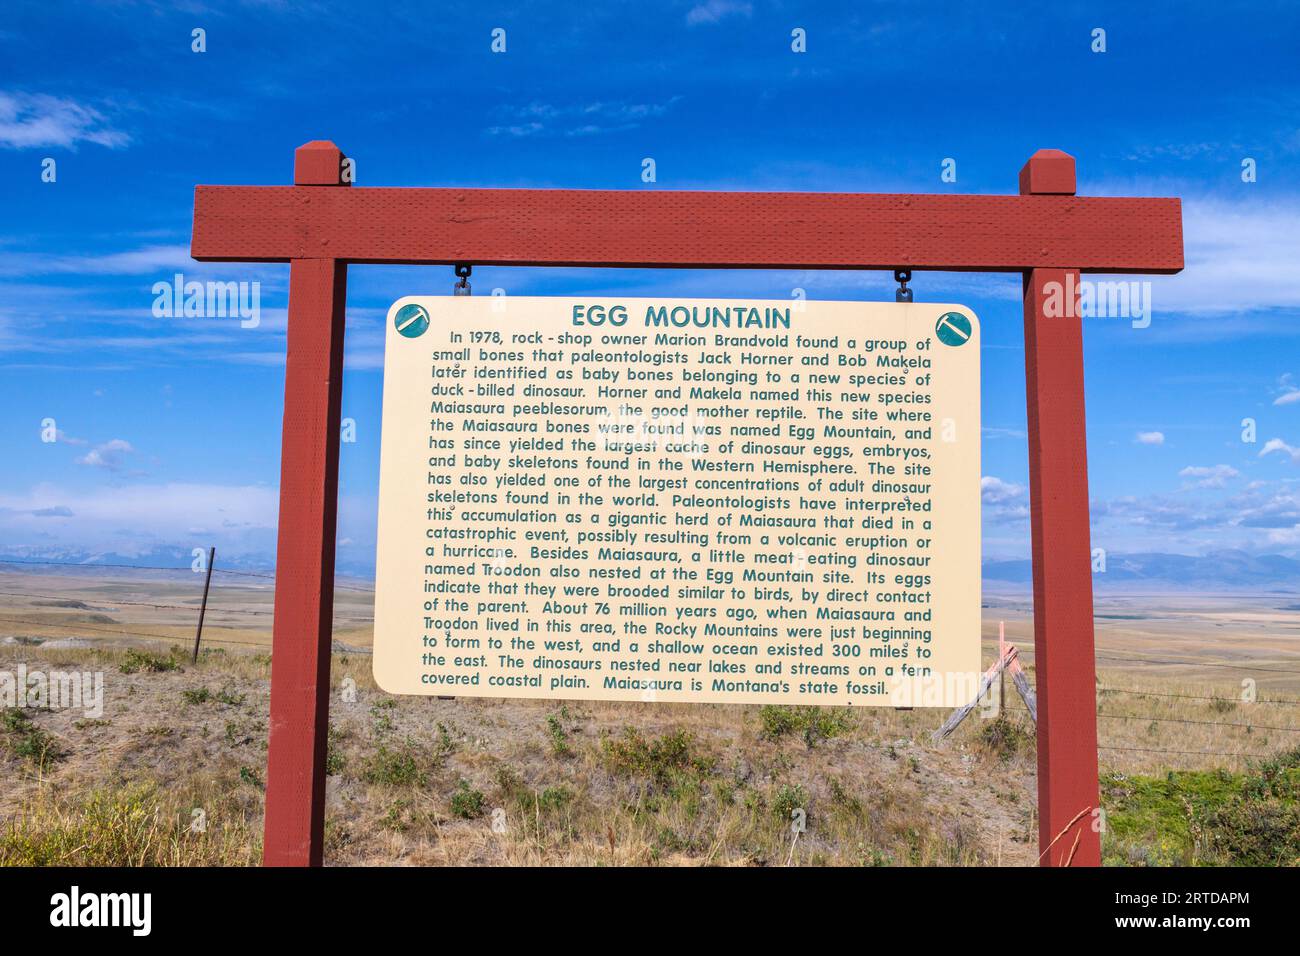 Indicazioni stradali per Egg Mountain in Montana. Nidi e uova del dinosauro a becco d'anatra, Maiasaura peeblesorum, (fossile dello stato del Montana) trovato qui. Foto Stock